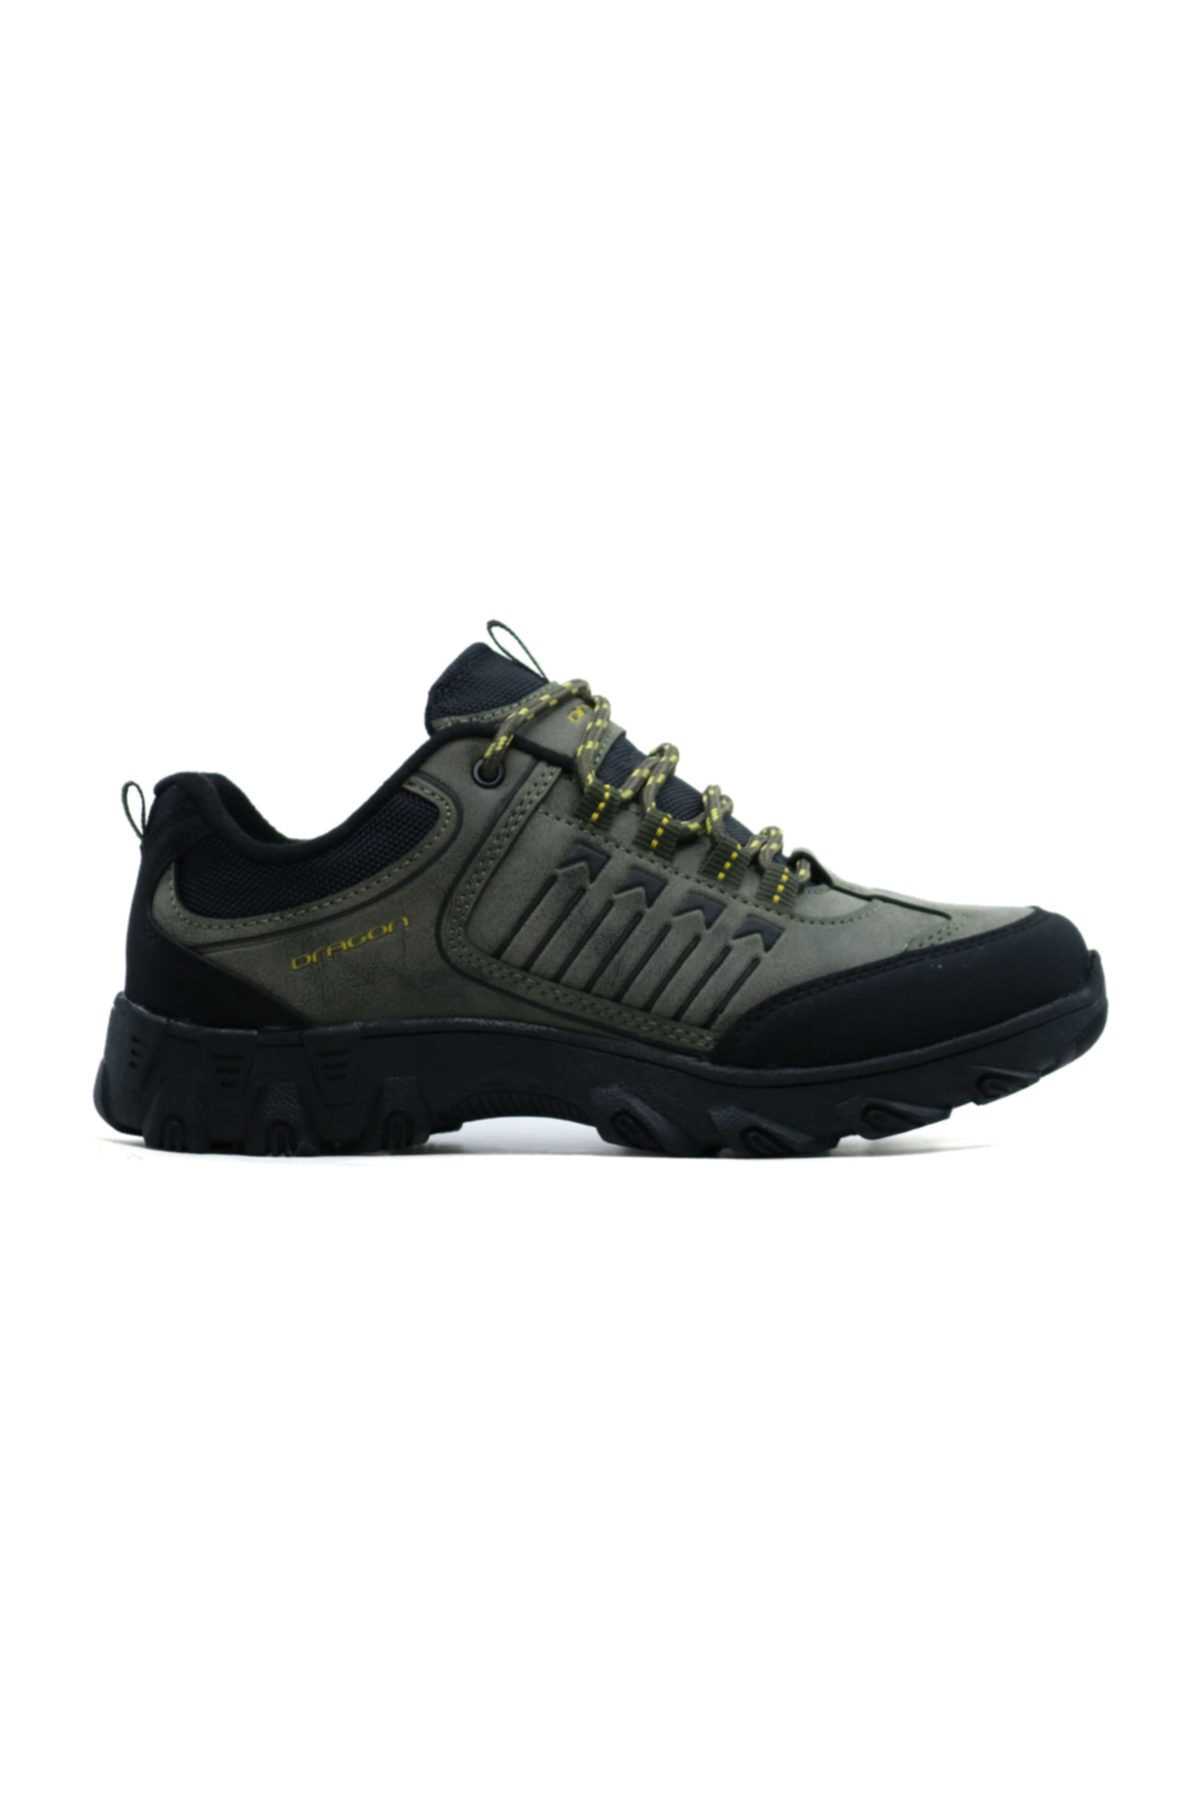 خرید انلاین کفش کلاسیک مردانه خاص برند Ayakkabix رنگ خاکی کد ty37995526